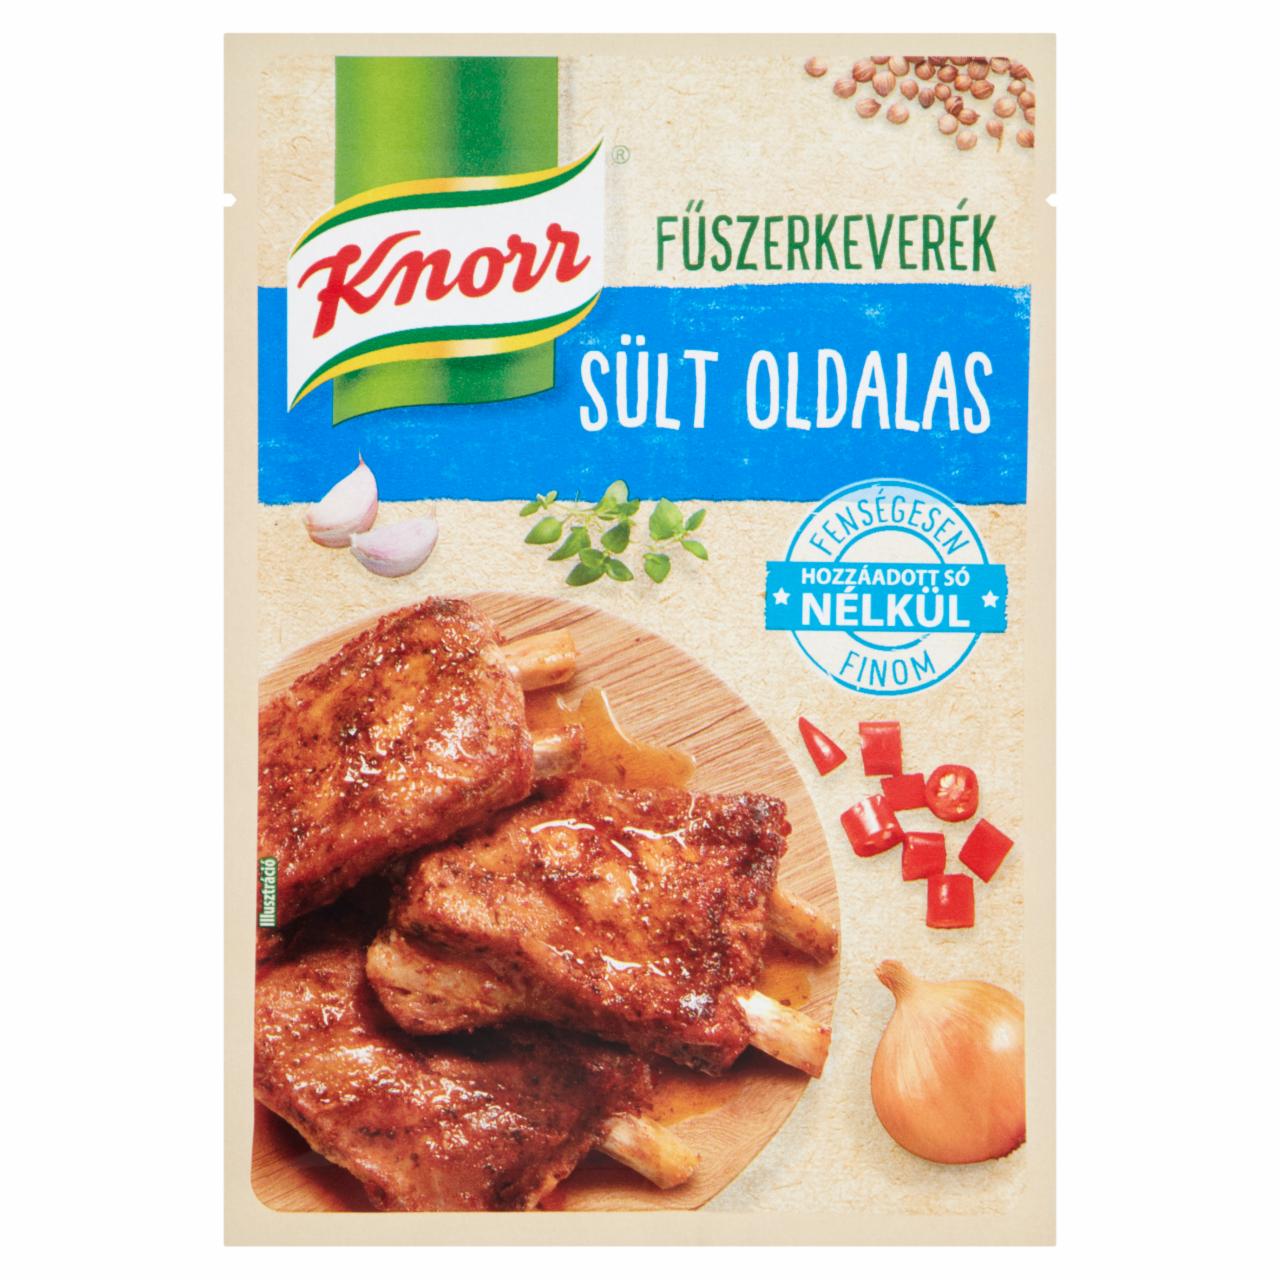 Képek - Knorr sült oldalas fűszerkeverék 25 g